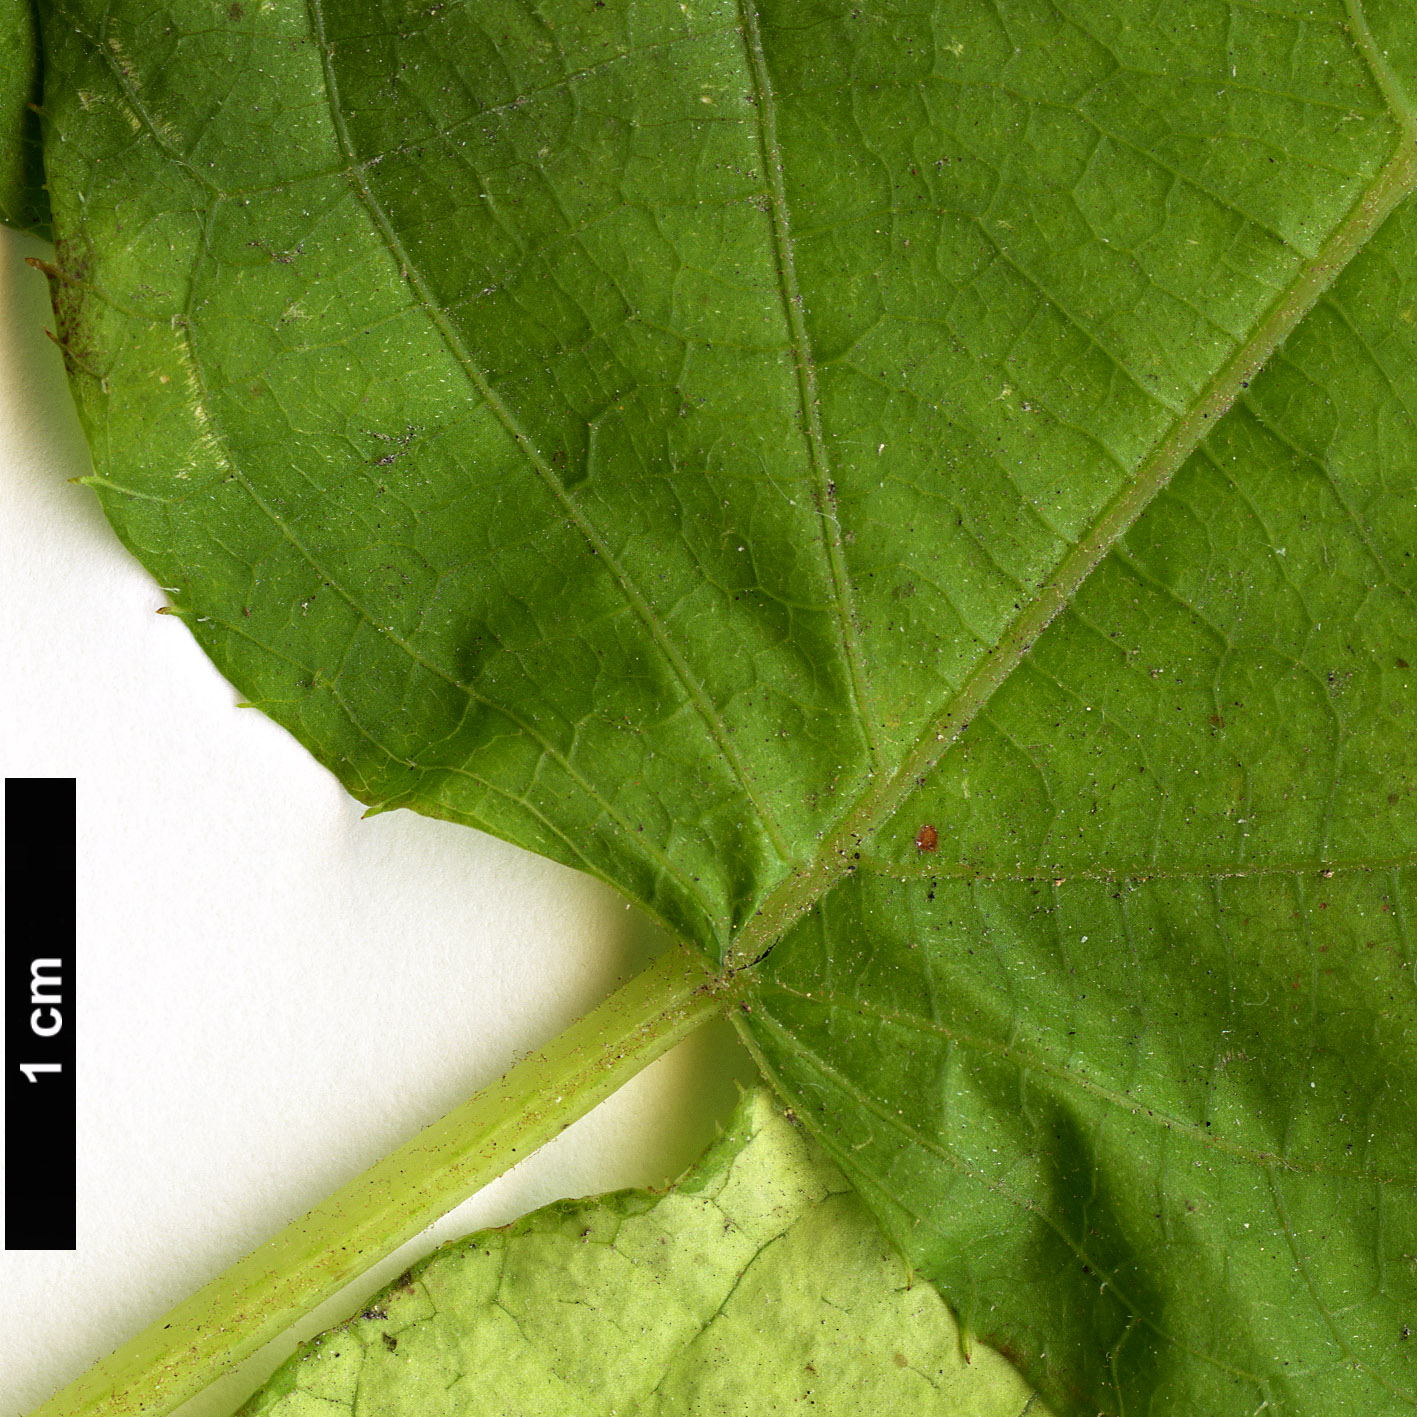 High resolution image: Family: Actinidiaceae - Genus: Actinidia - Taxon: kolomikta